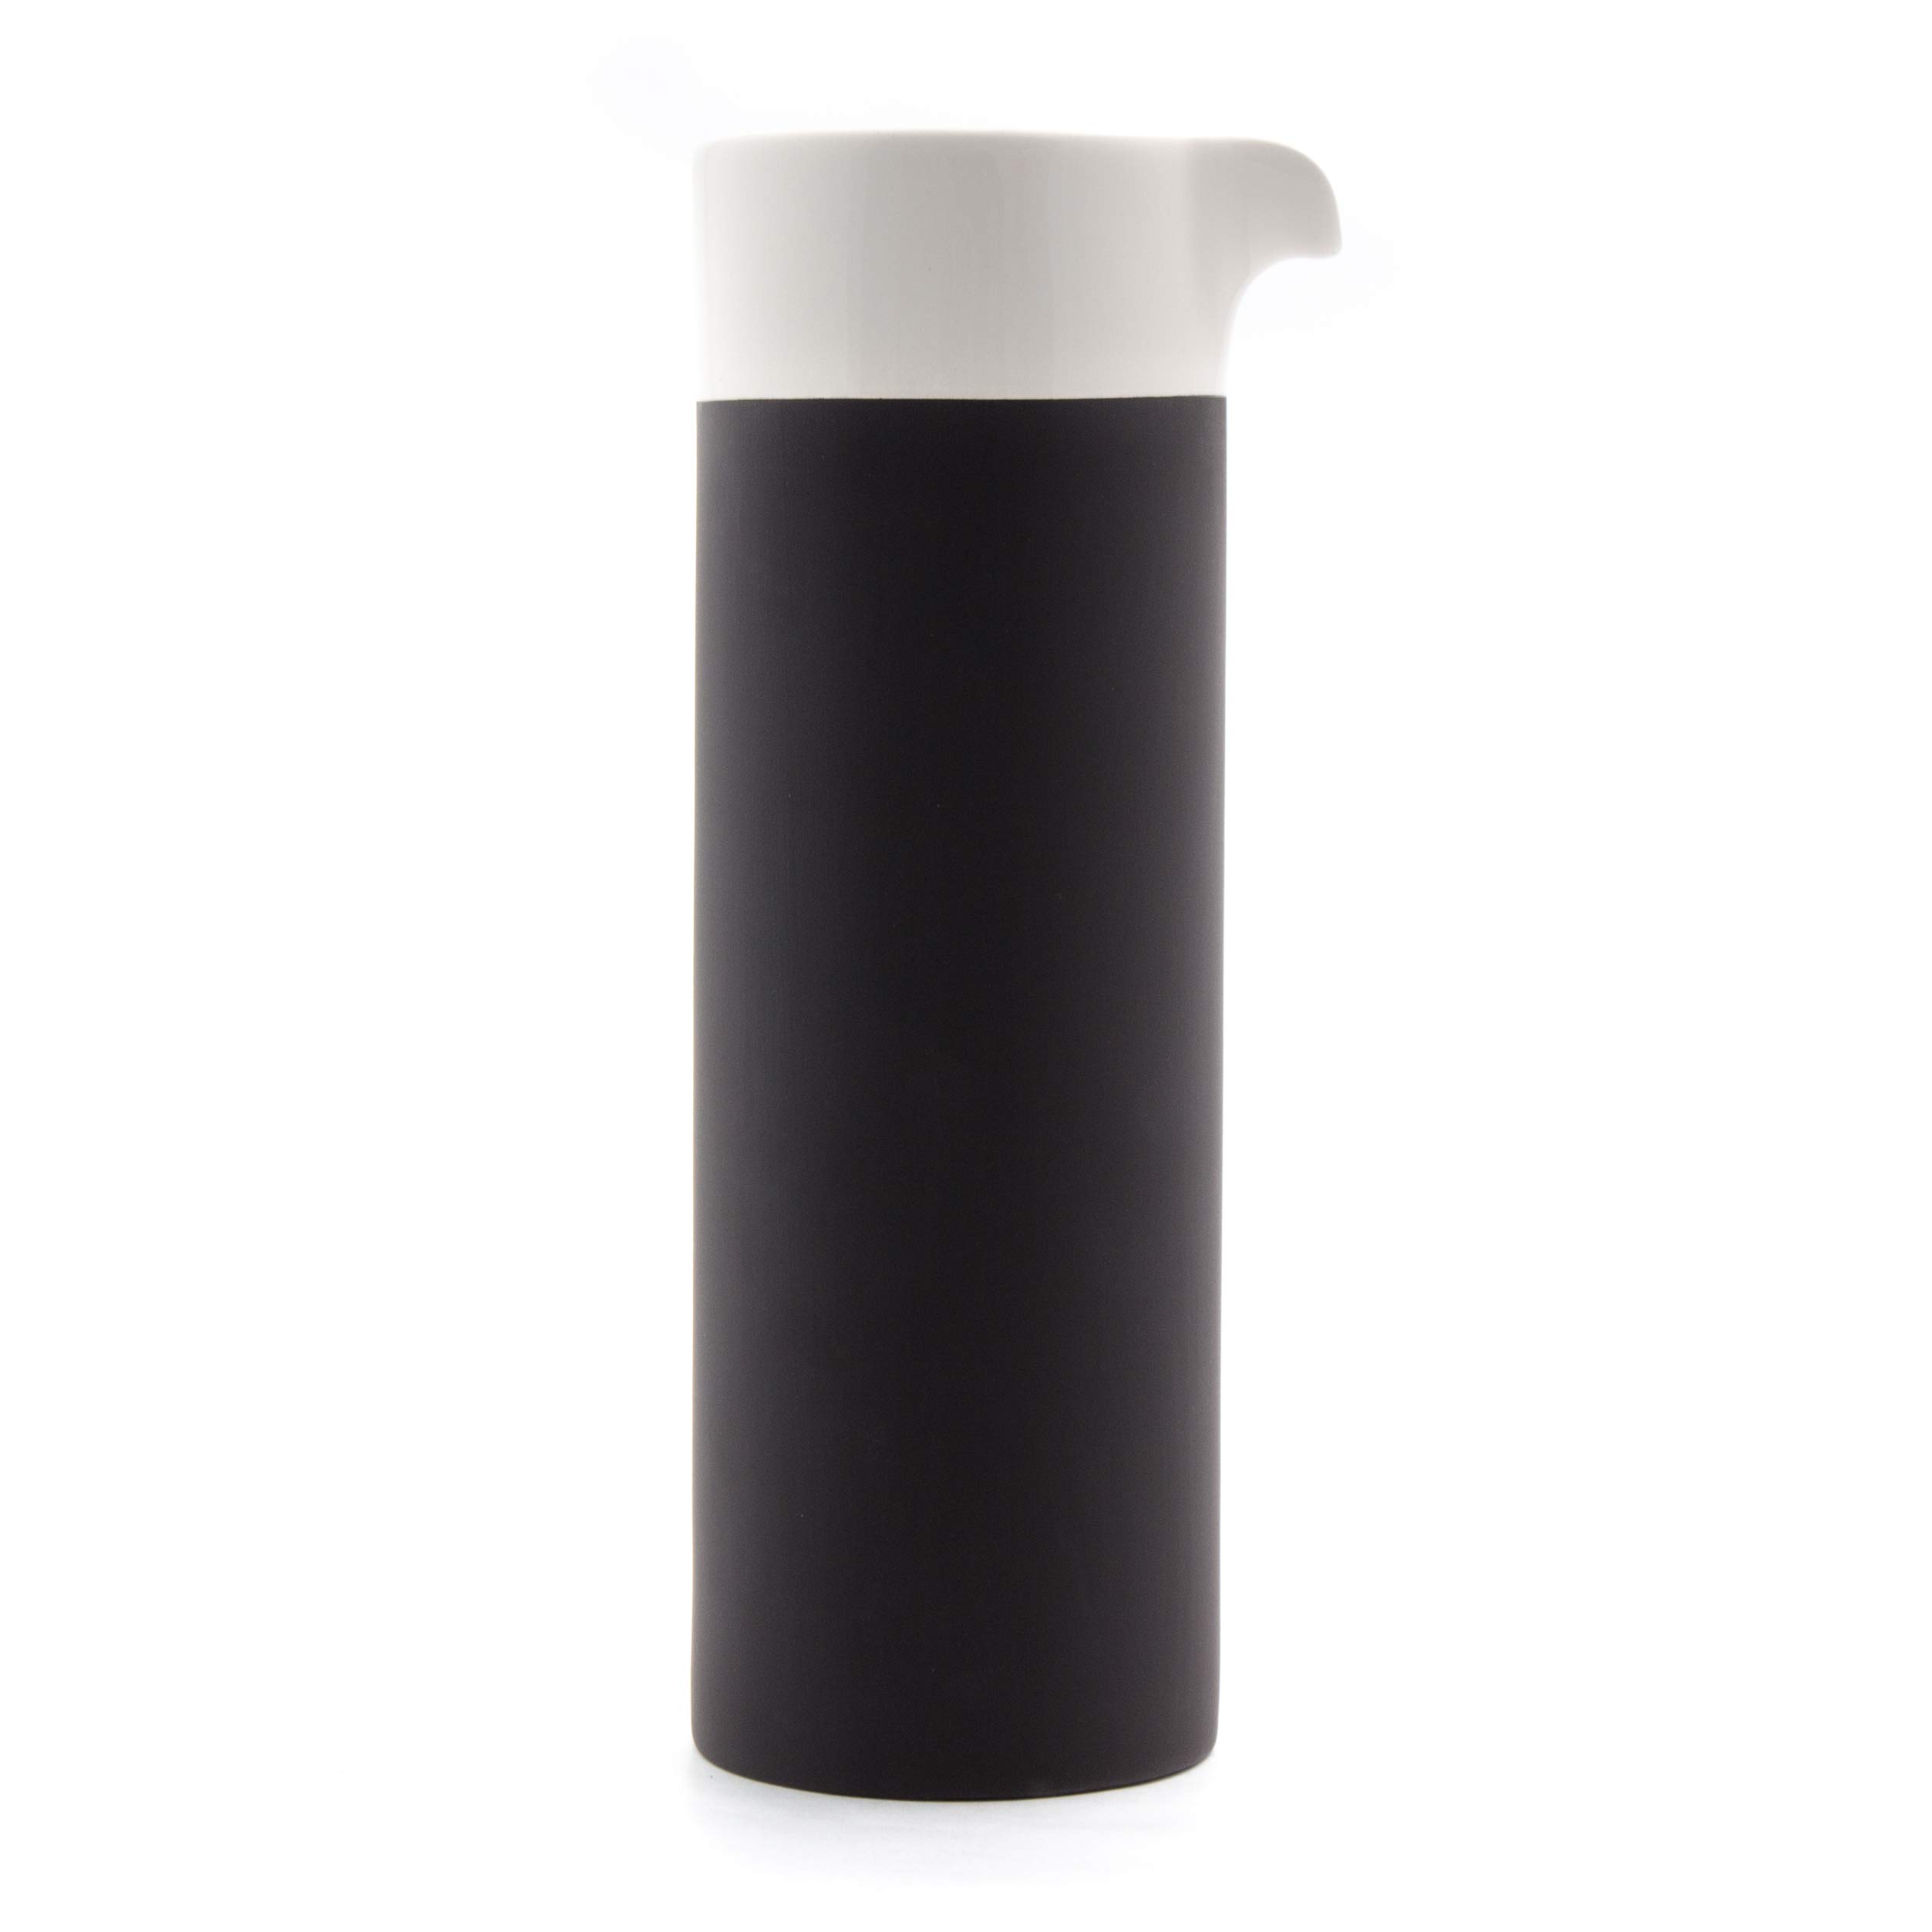 Magisso Selbst abkühlende Karaffe 0,75 L, Keramik, schwarz/weiß, 1 Stück (1er Pack)